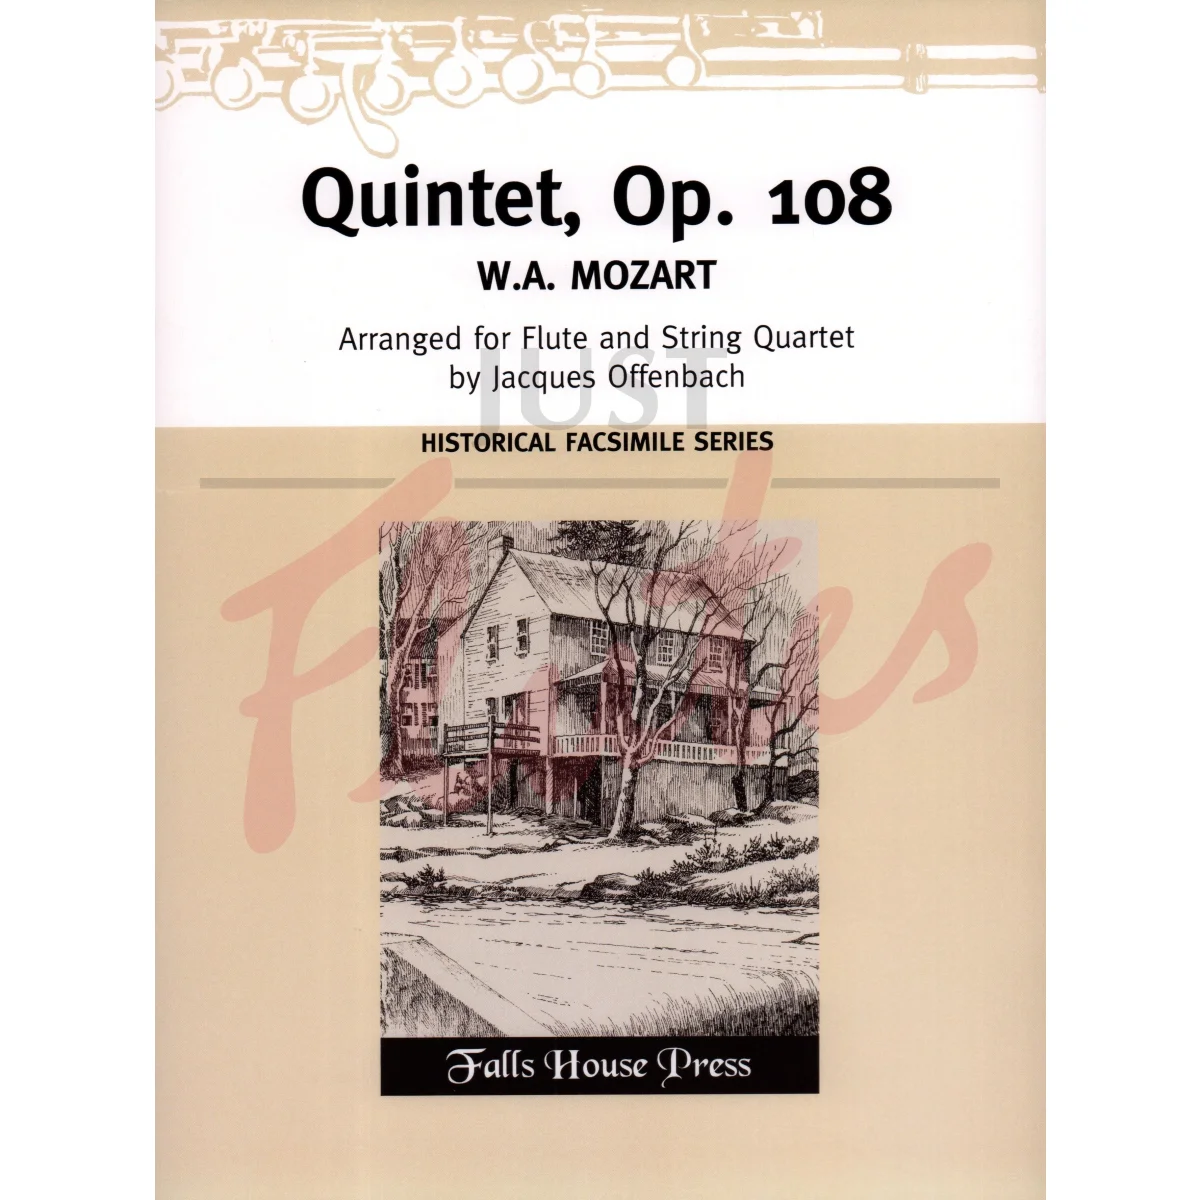 Quintet arranged for Flute and String Quartet